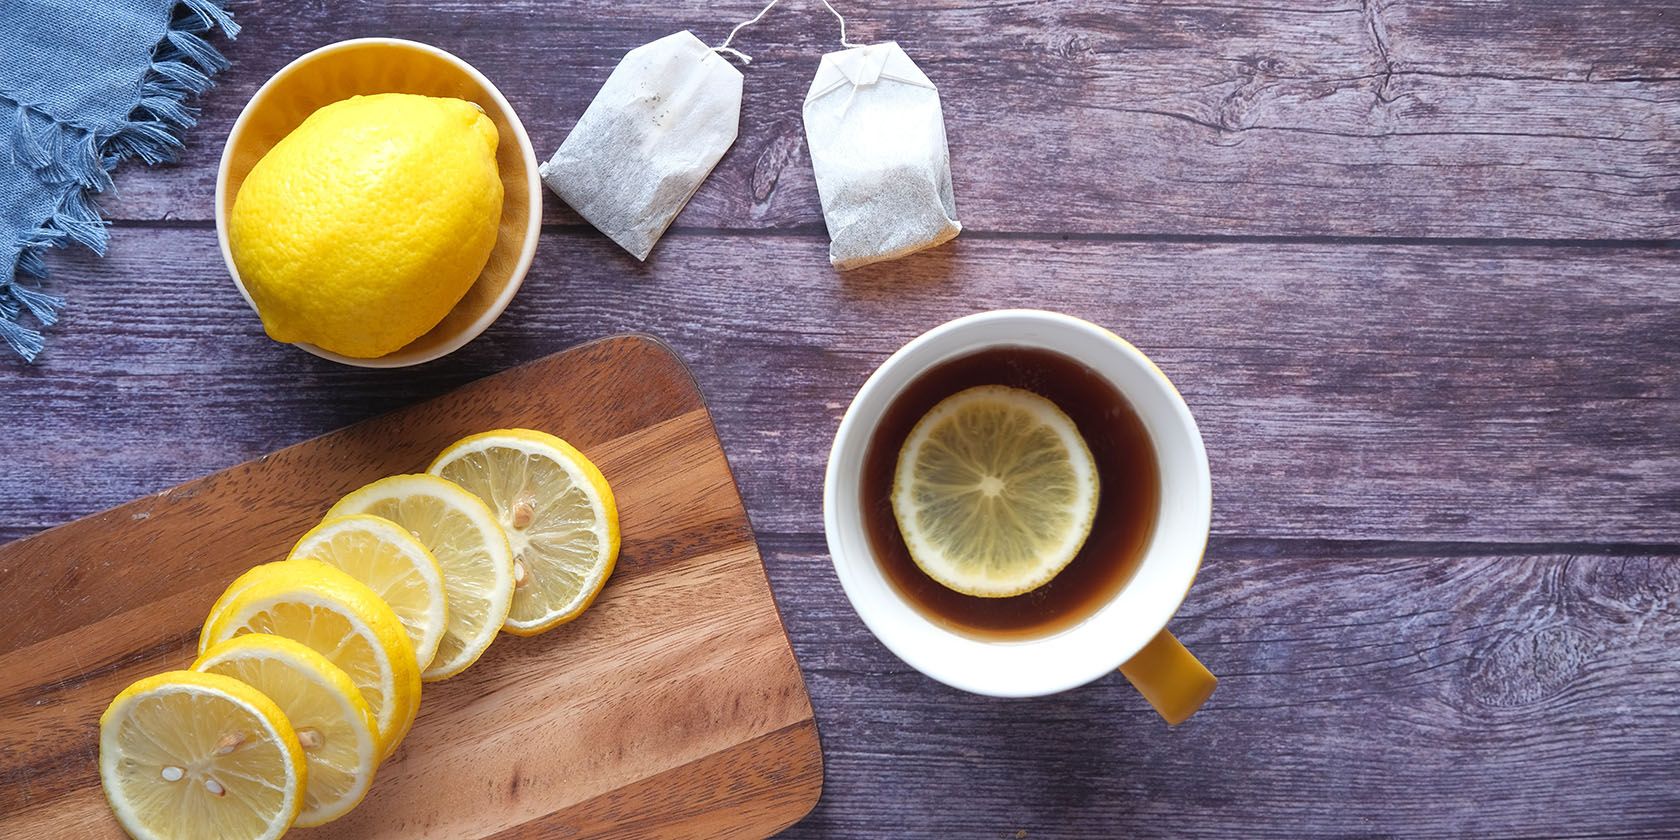 Hot tea and sliced lemons